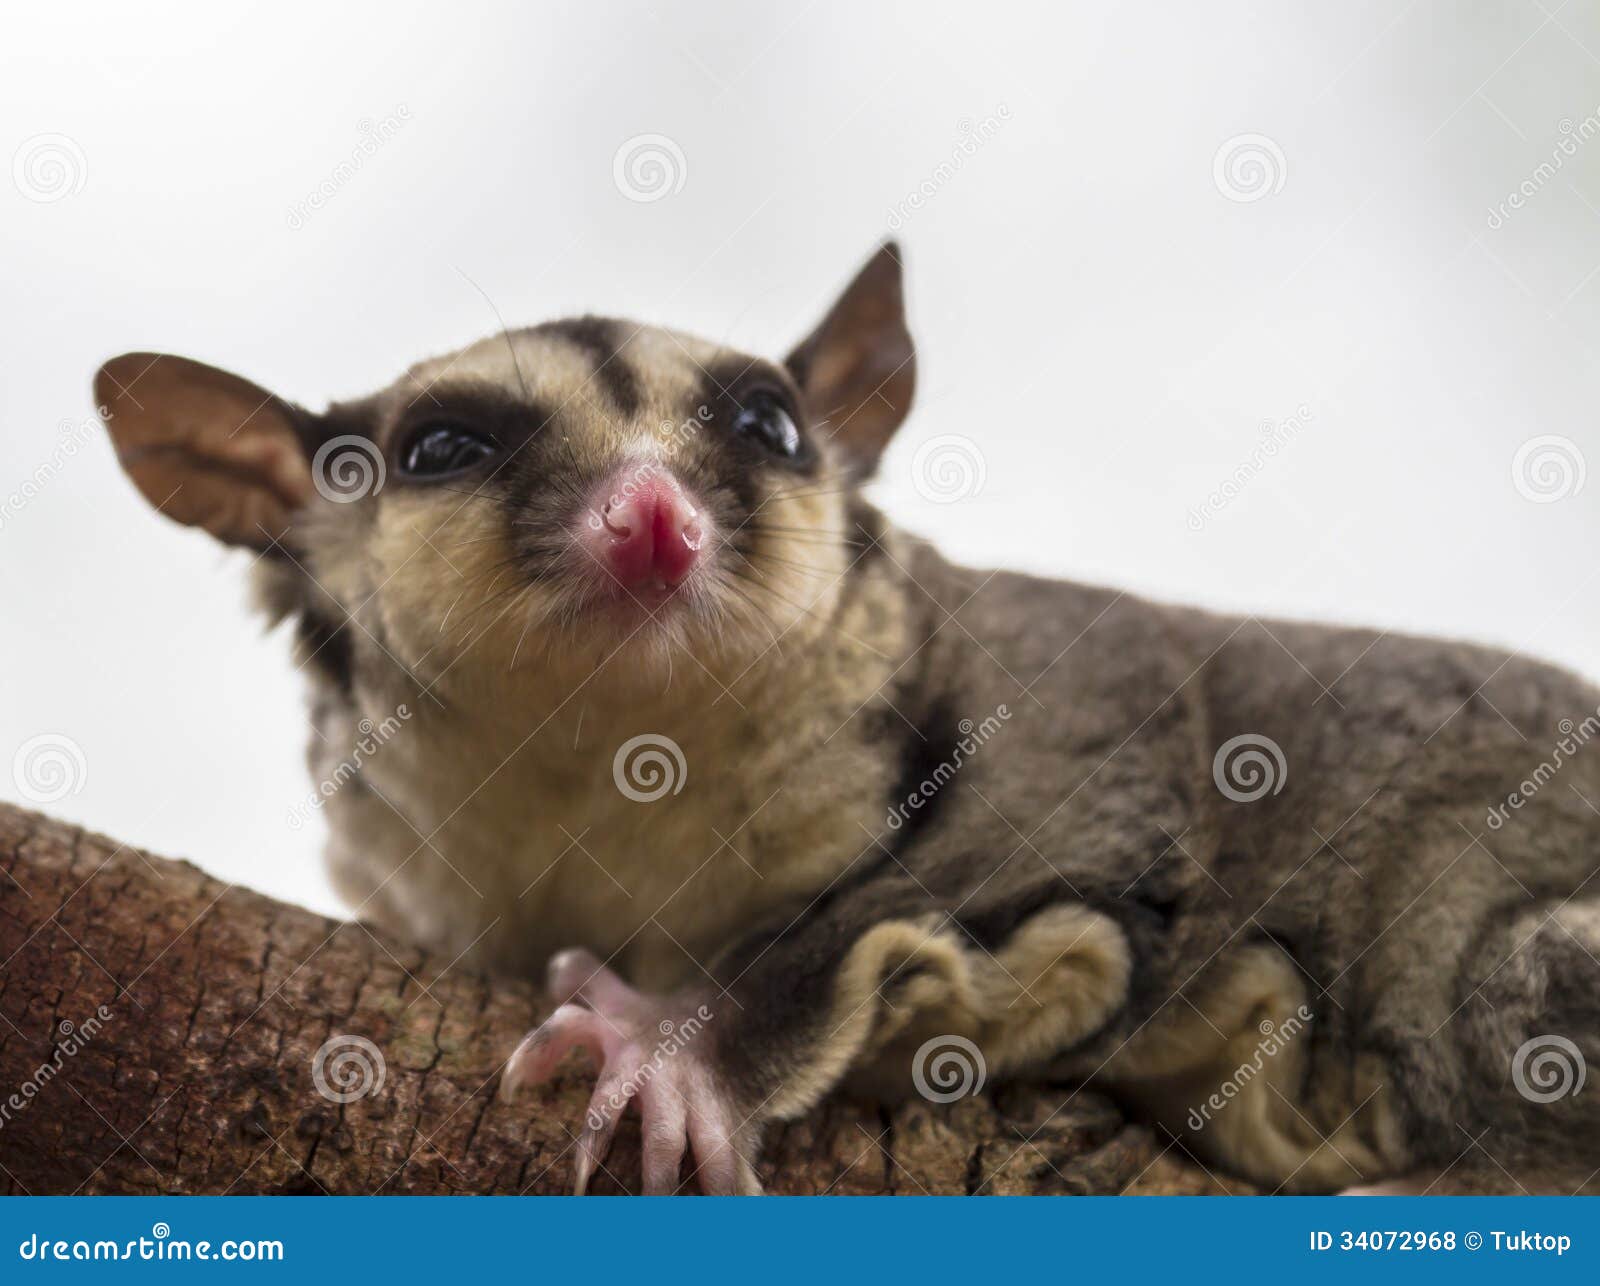 Flying Squirrel, Sugar Glider Stock Photo - Image of wild, opossum: 34072968